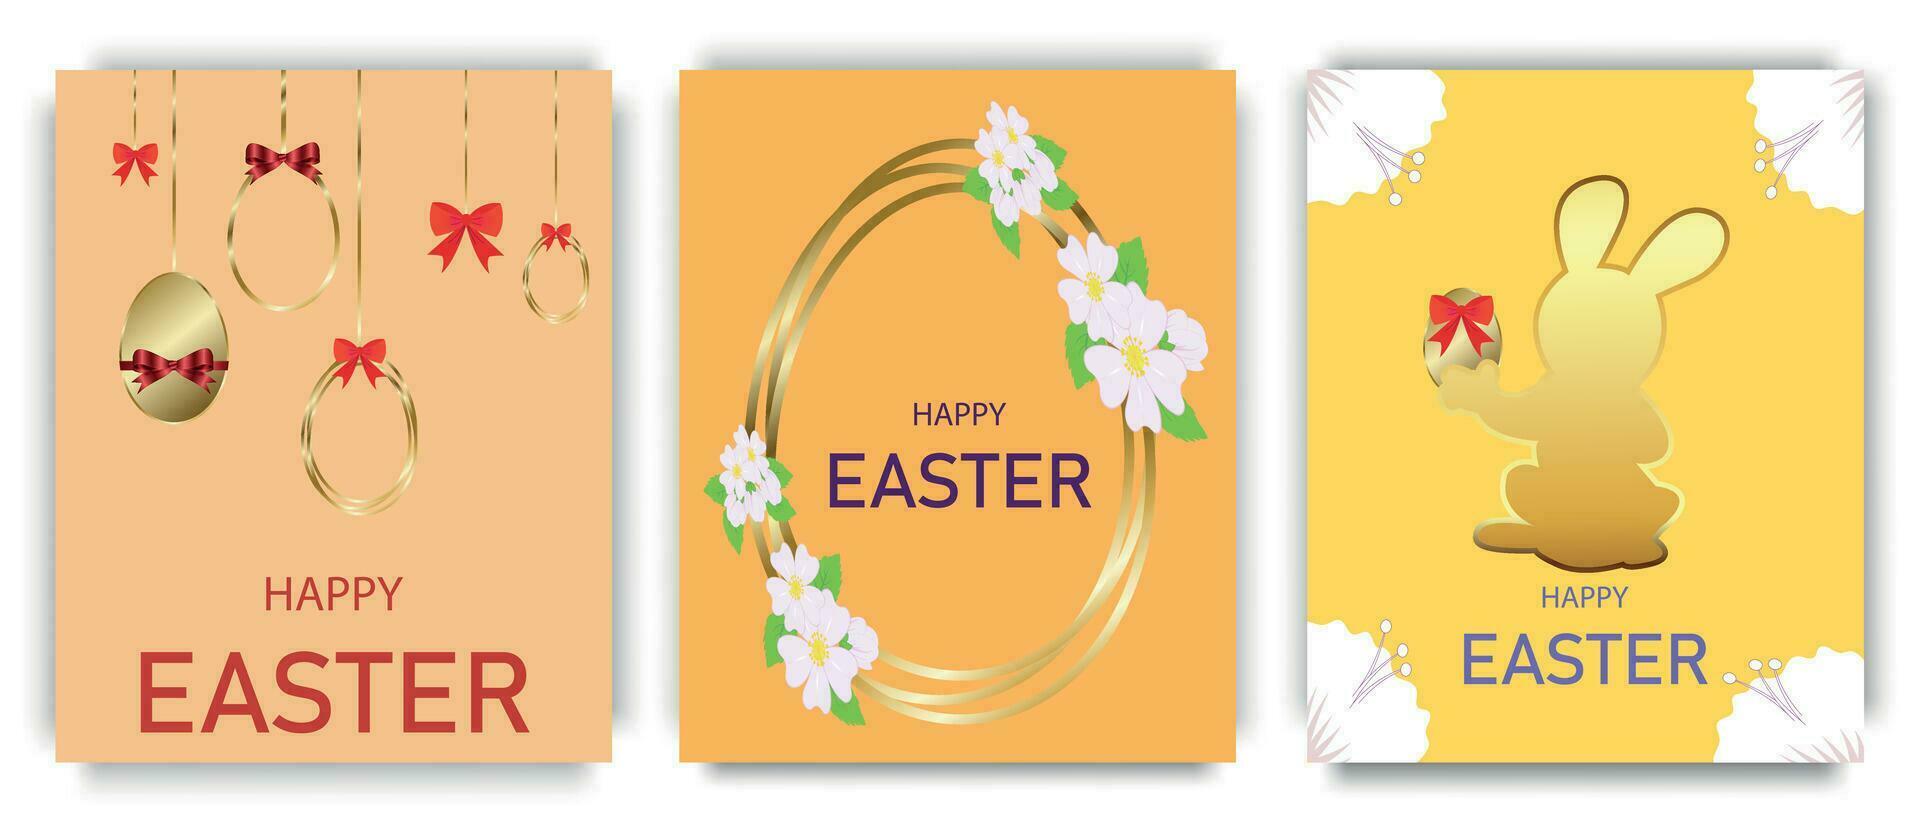 contento Pasqua vacanza manifesti con oro decorazione, fiori e Pasqua coniglietto su un' luminosa sfondo. internazionale primavera vacanza design per saluto carta o festa invito. vettore illustrazione.